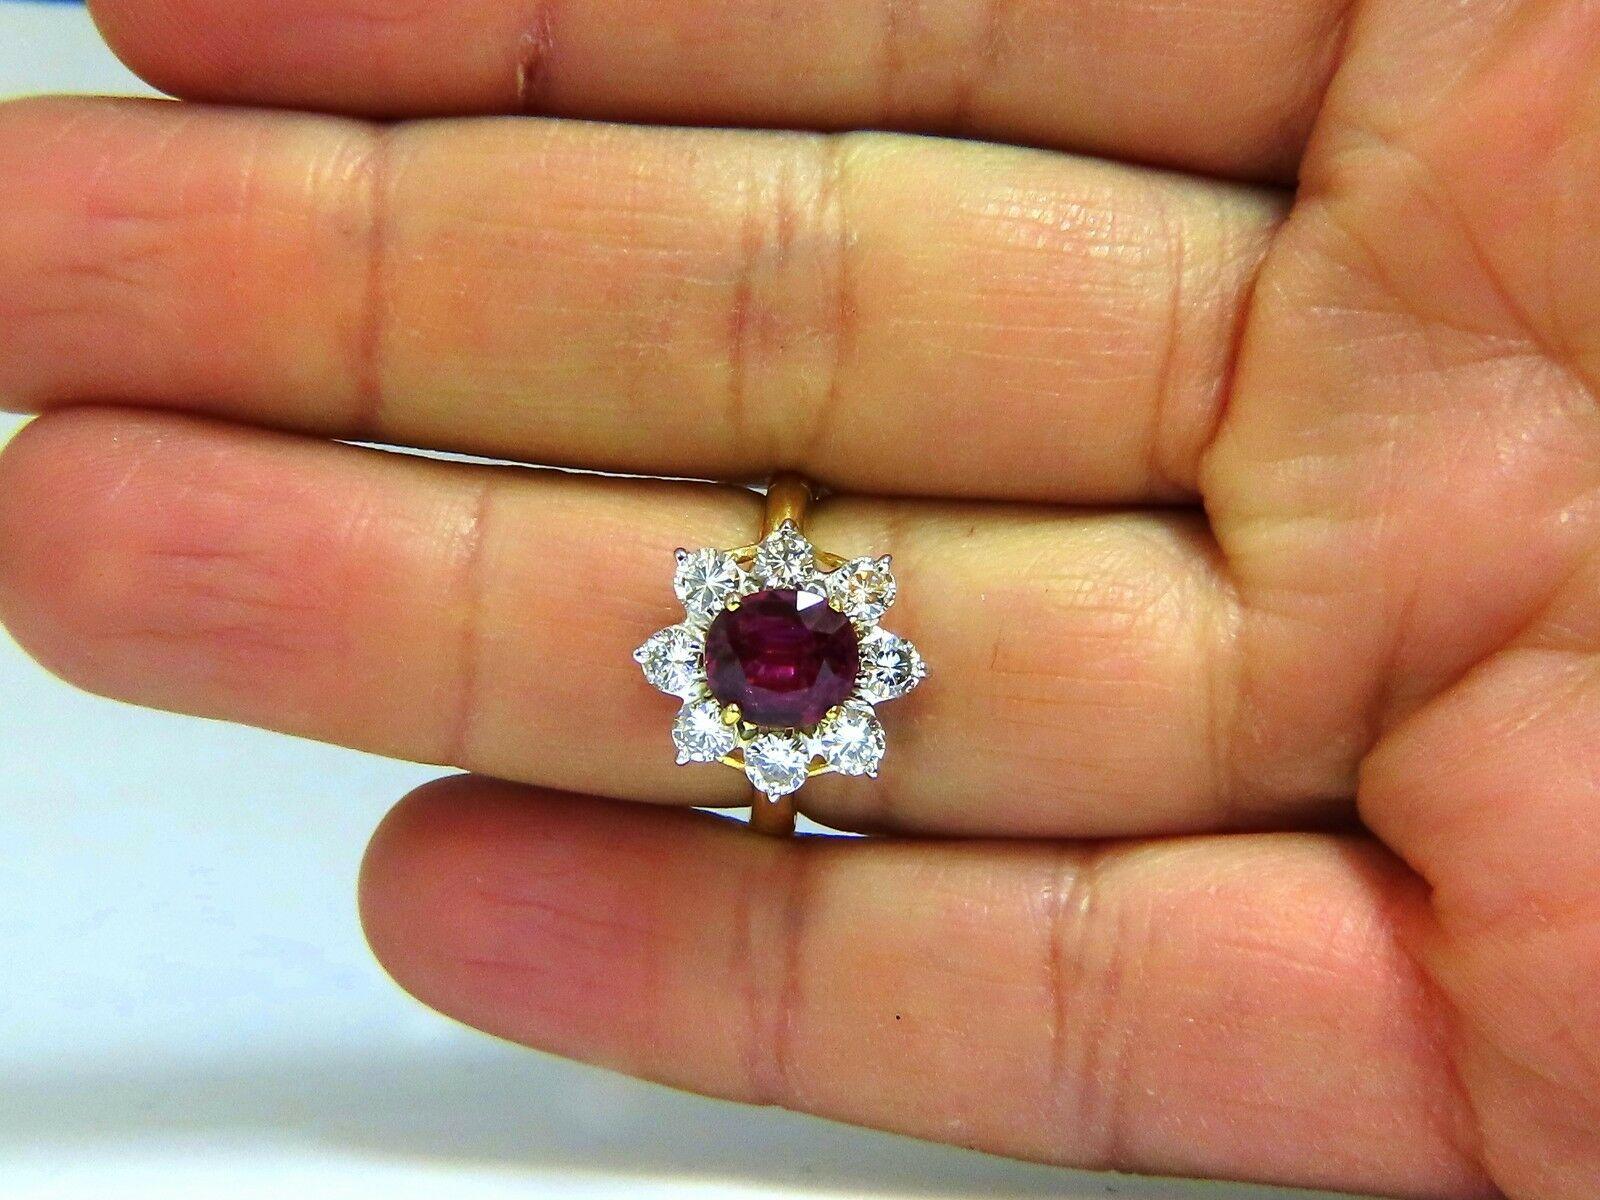 Amas de halo de rubis Diana Prime

Bague en rubis naturel certifié par le GIA (2,00 ct)

Rapport :  6197270663

Ovale Brillant

Transparent, violet - rouge.

8.16 X 7,38 X 3,79mm

Pas de chaleur / Pas d'amélioration

Origine Thaïlande



1.20ct. de